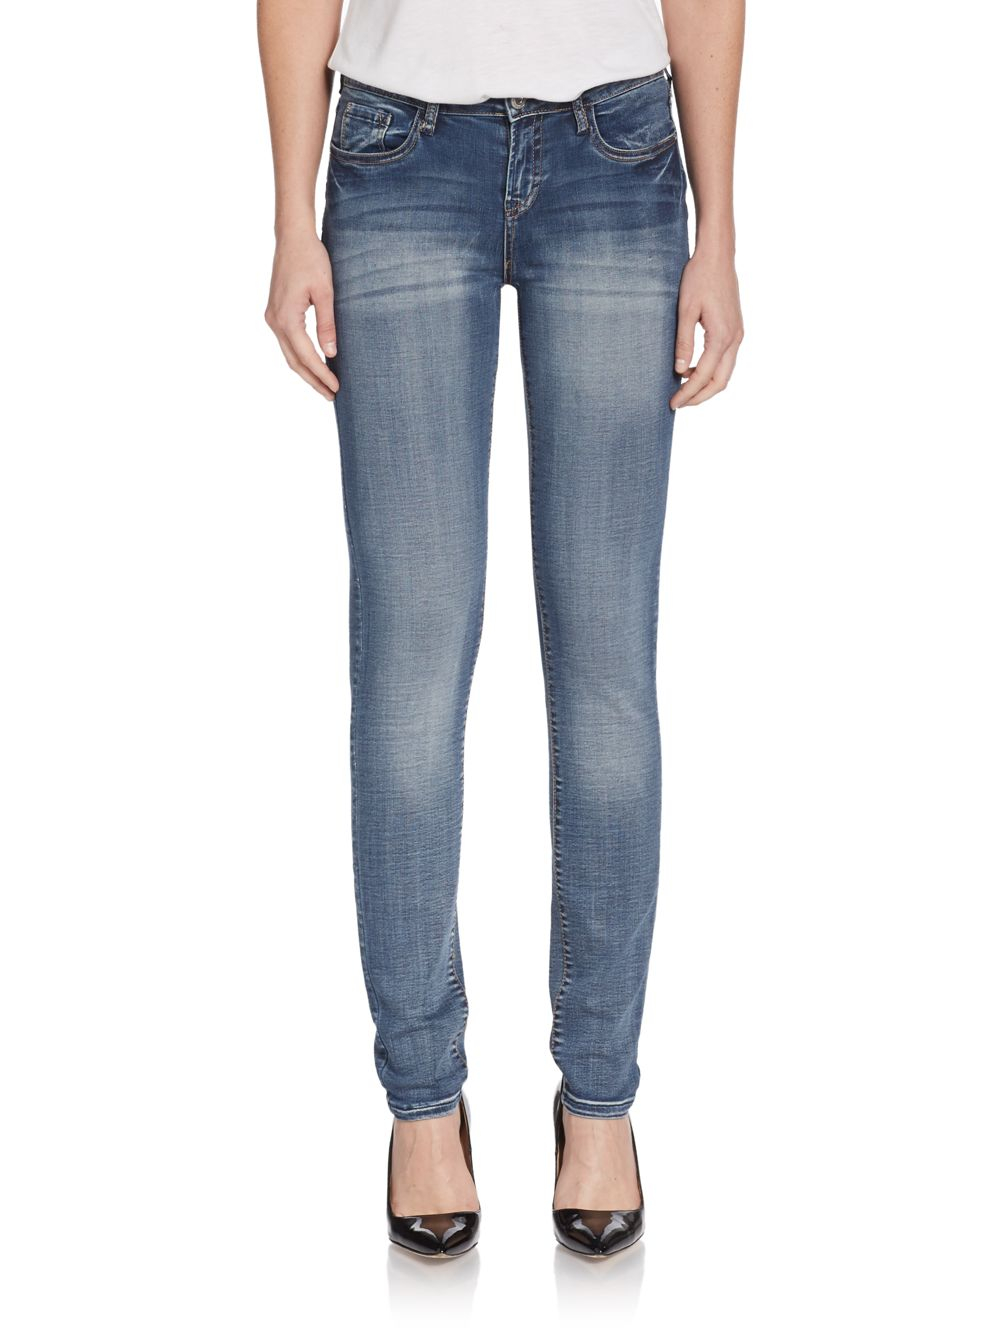 Lyst - Kensie Bleached Skinny Denim Jeans in Blue